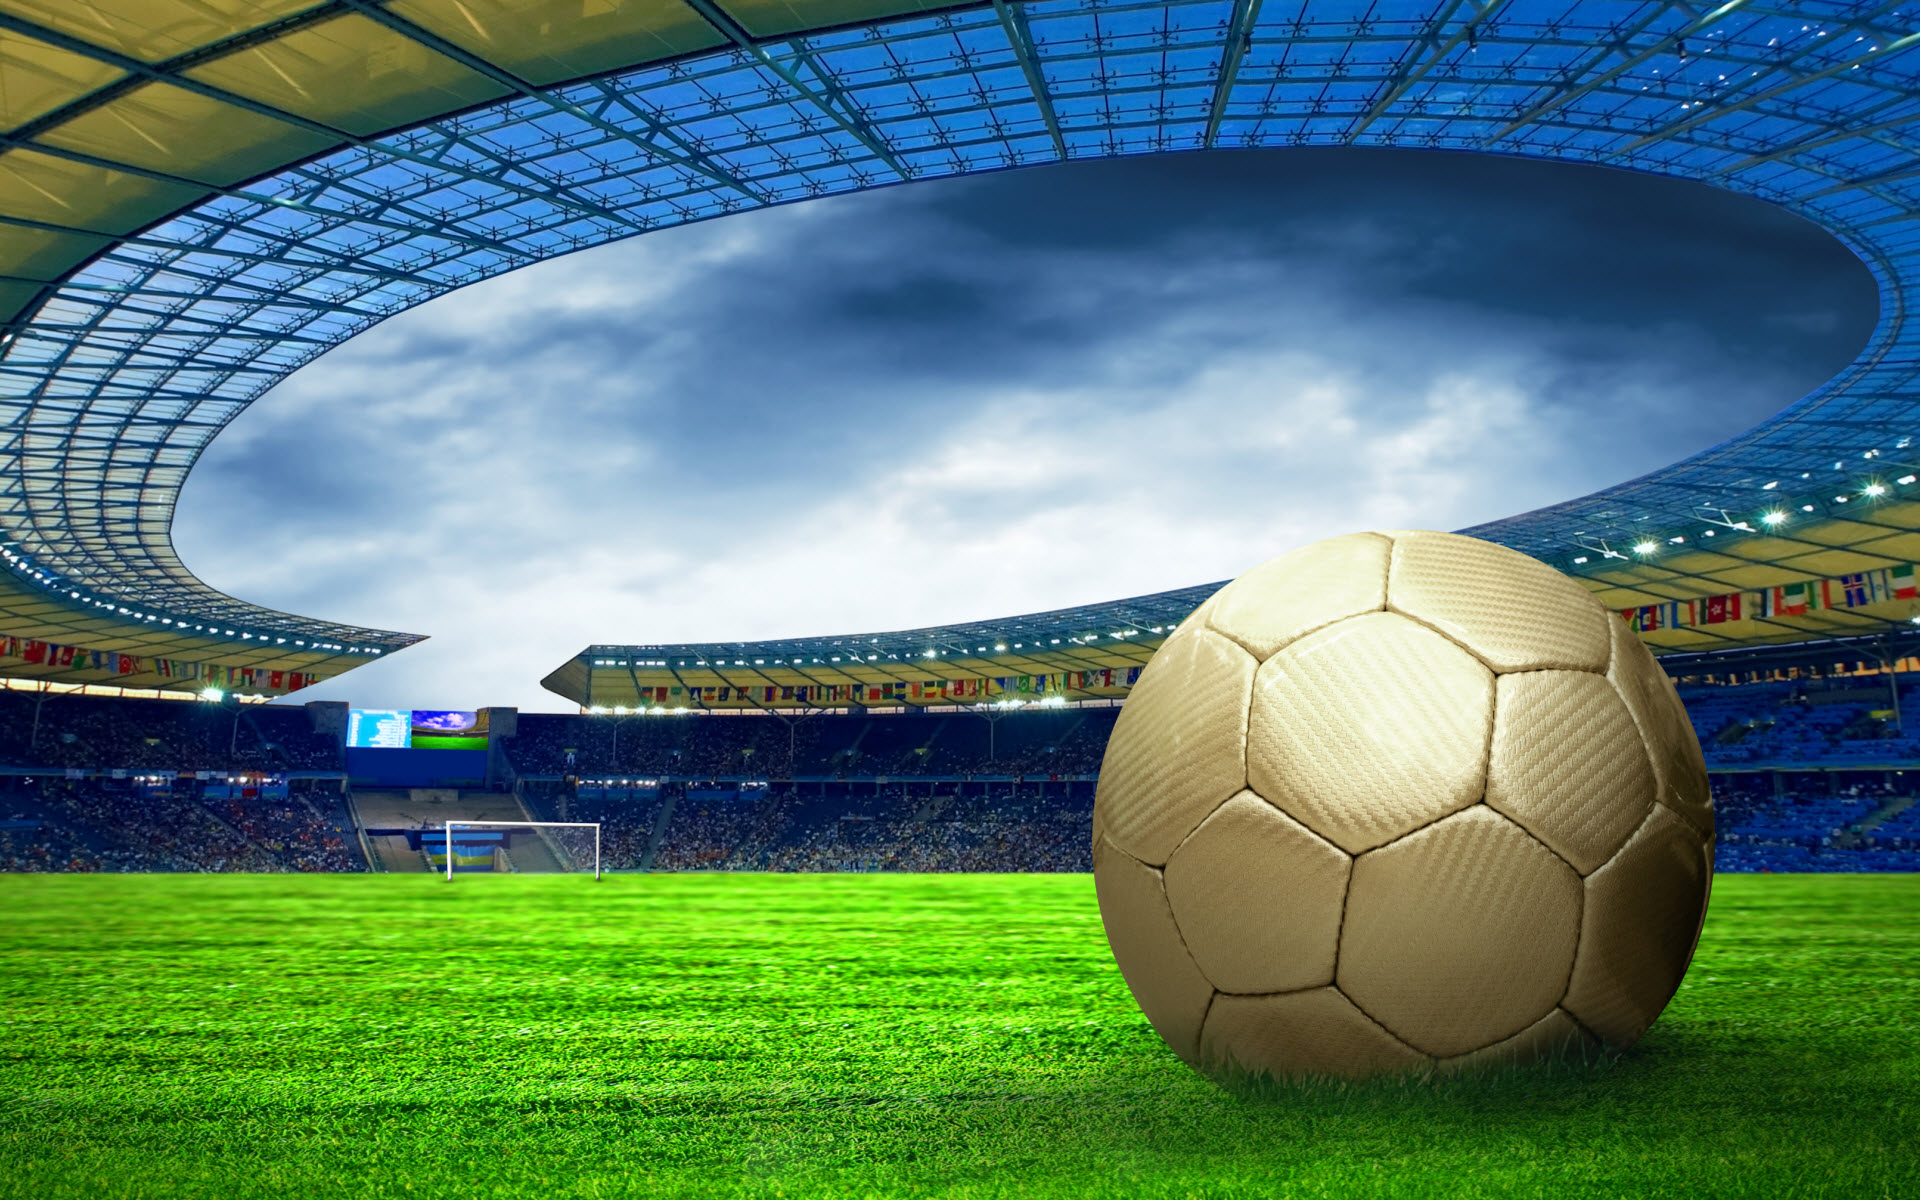 fondo de pantalla de fútbol,fútbol americano,balón de fútbol,estadio de fútbol específico,estadio,atmósfera